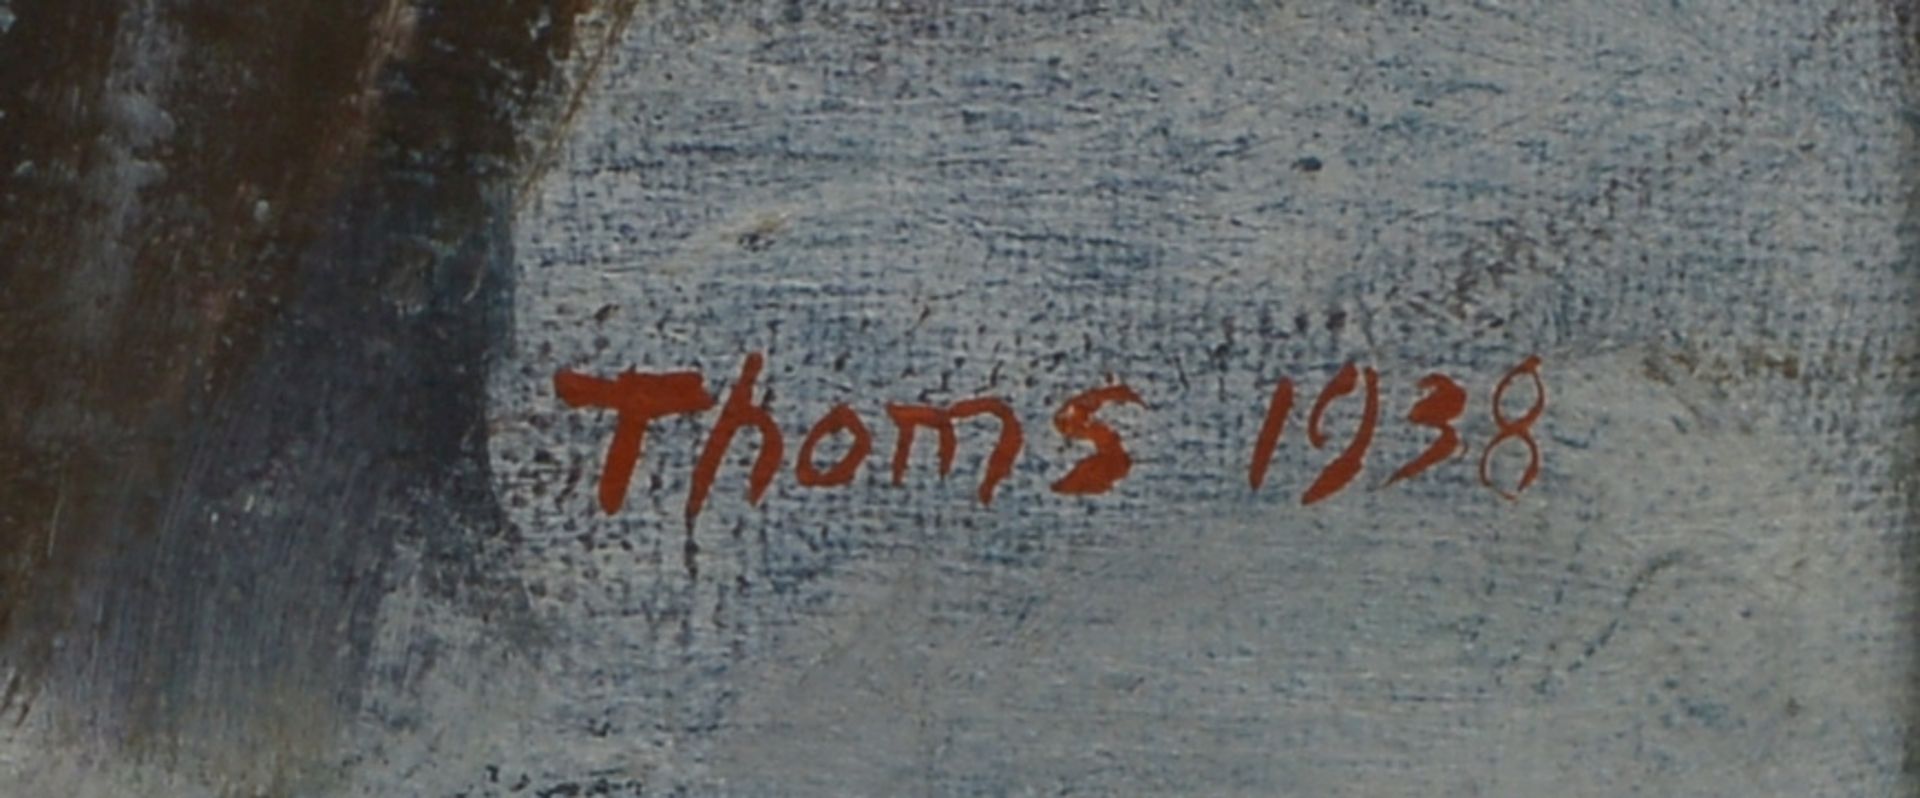 Thoms, Ernst, 'Schlittschuhläufer', Öl/Lw, sign./dat. 'Thoms 1938'; Bildmaße 73 x 124 cm - Bild 2 aus 3